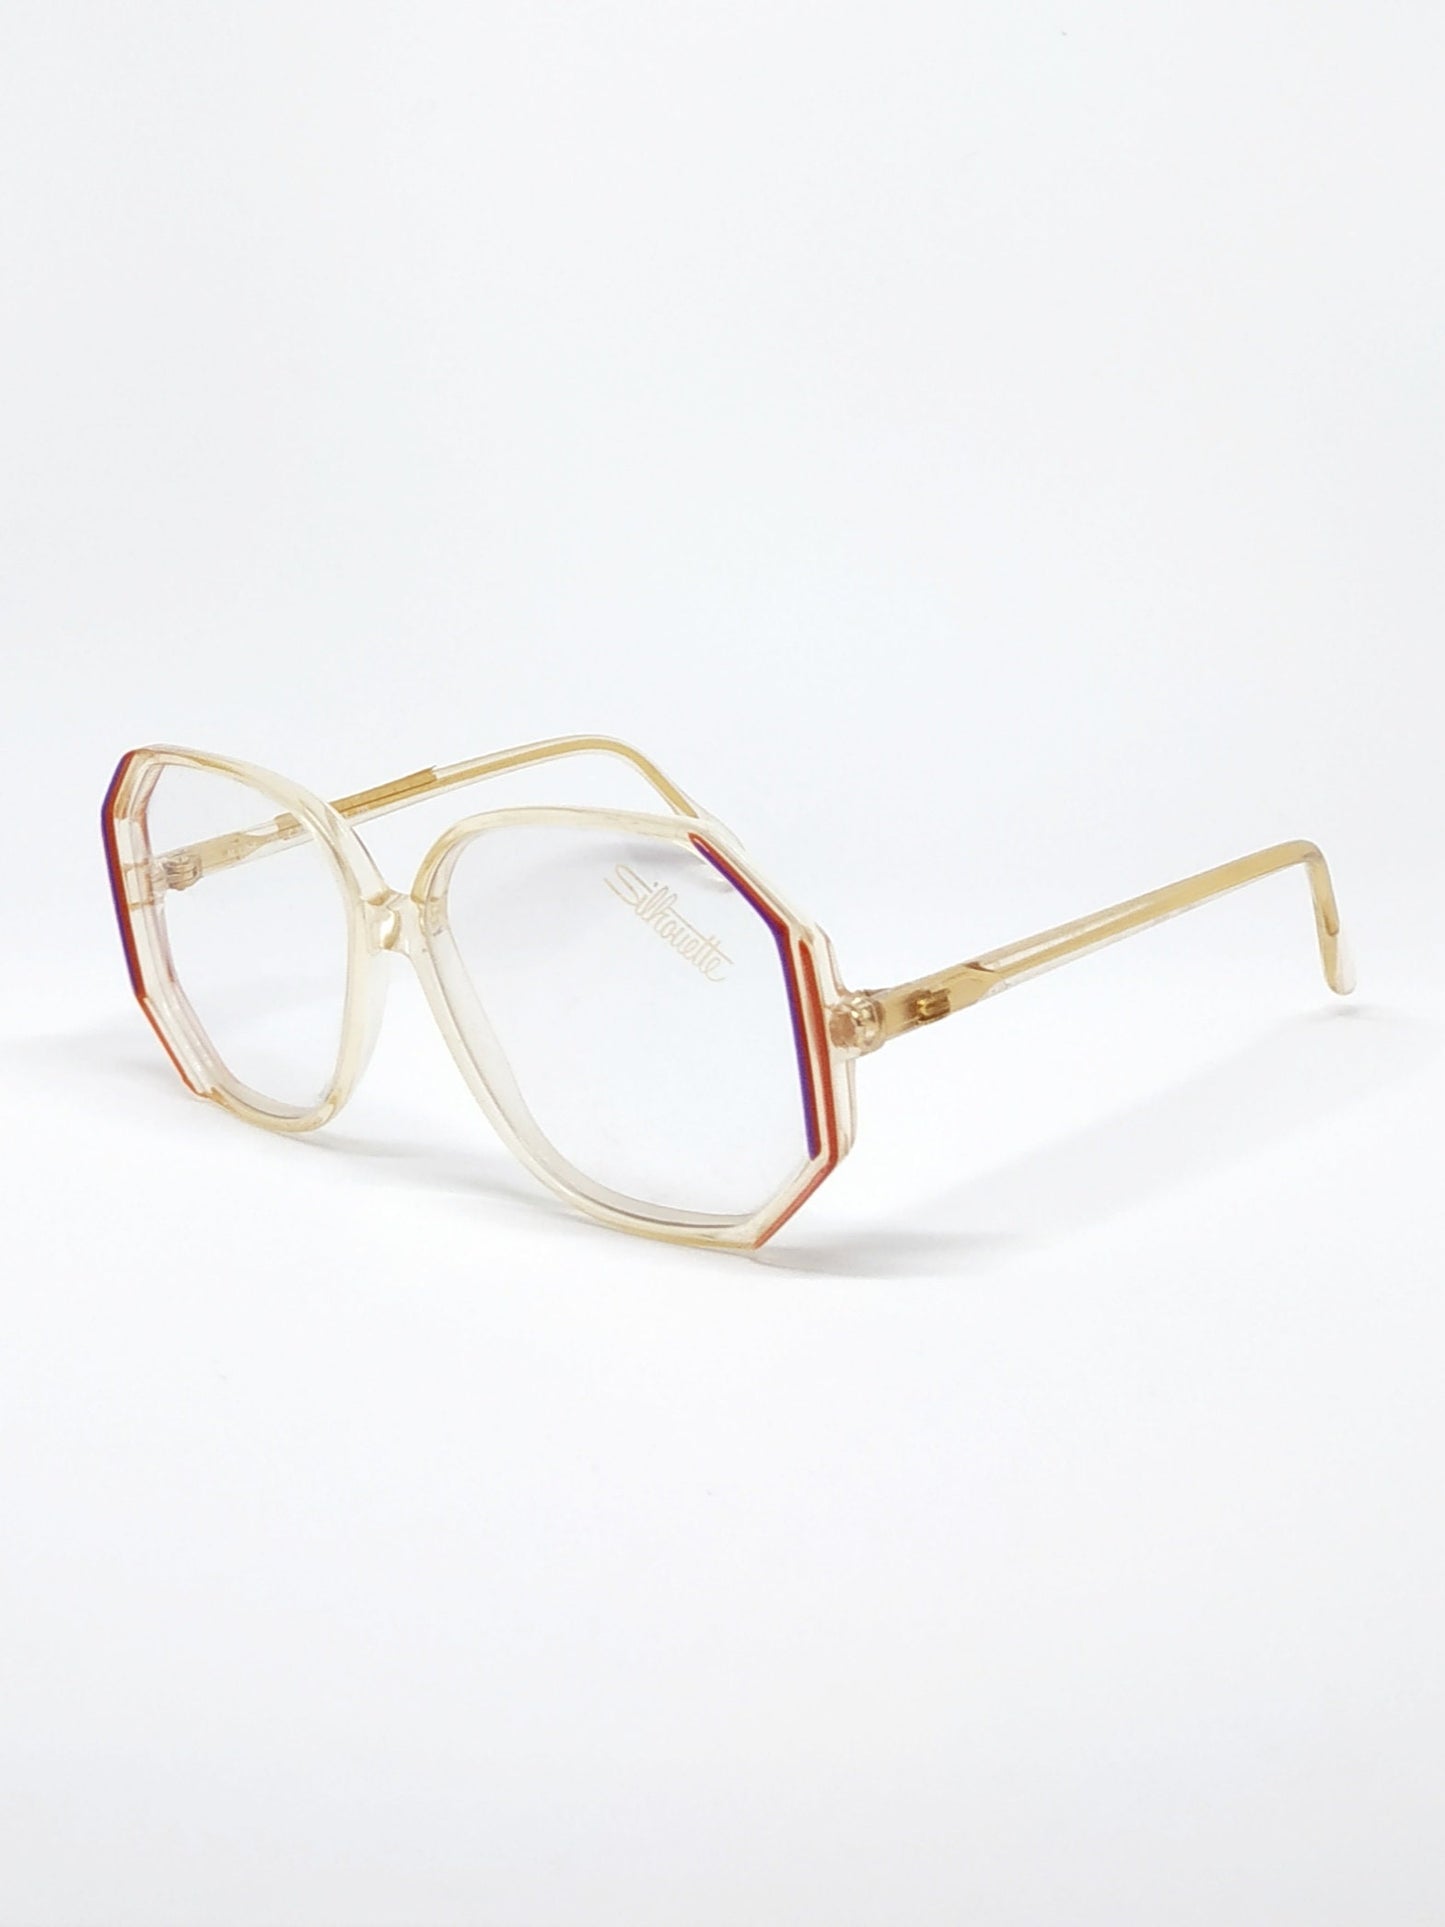 Vintage New old stock eyeglasses frames. Mod. M1254